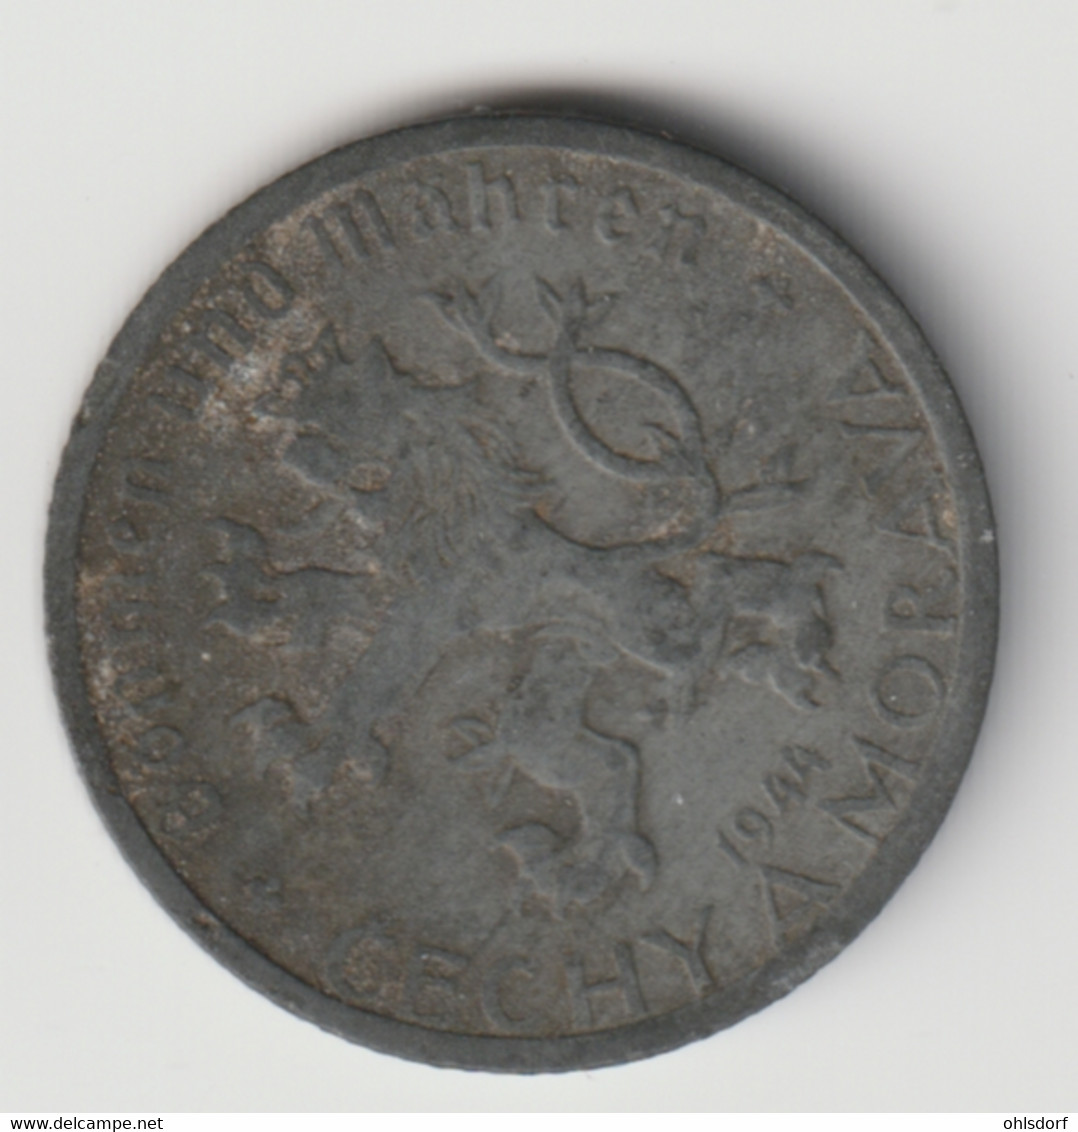 BÖHMEN UND MÄHREN 1944: 50 Haleru, KM 3 - Military Coin Minting - WWII